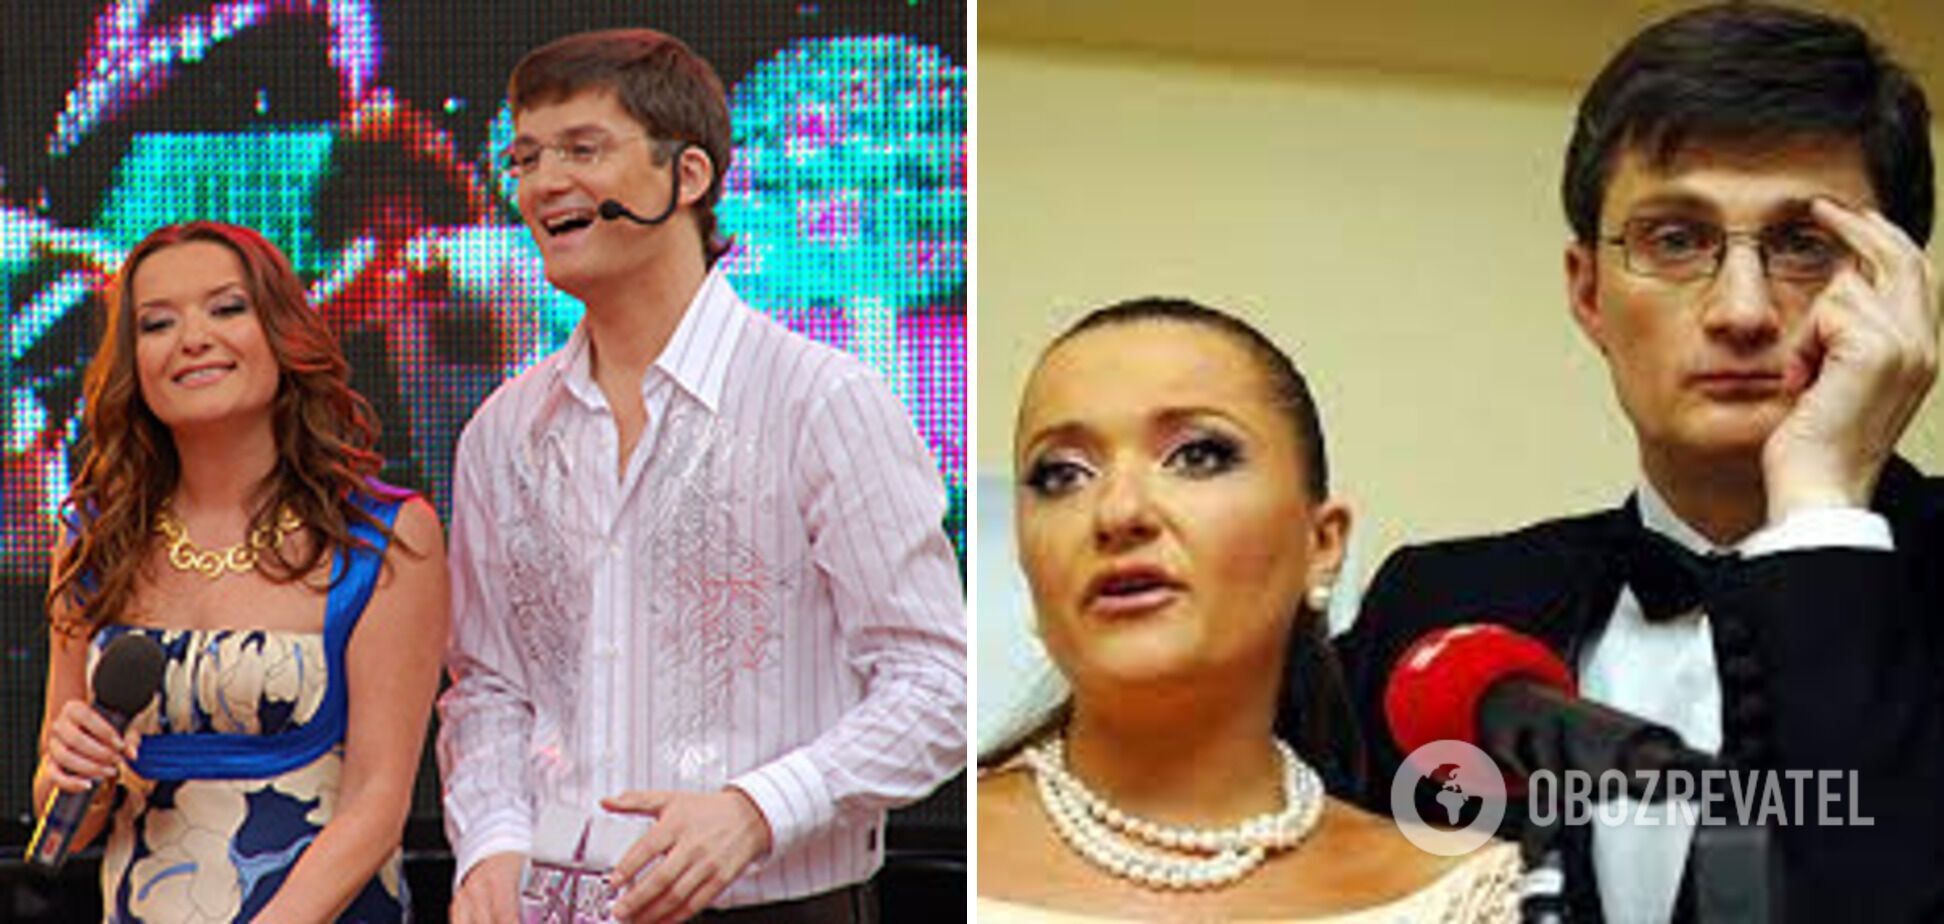 Ігор Кондратюк не погодився з Наталією Могилевською, яка заявила про загальну підтримку Віктора Януковича.